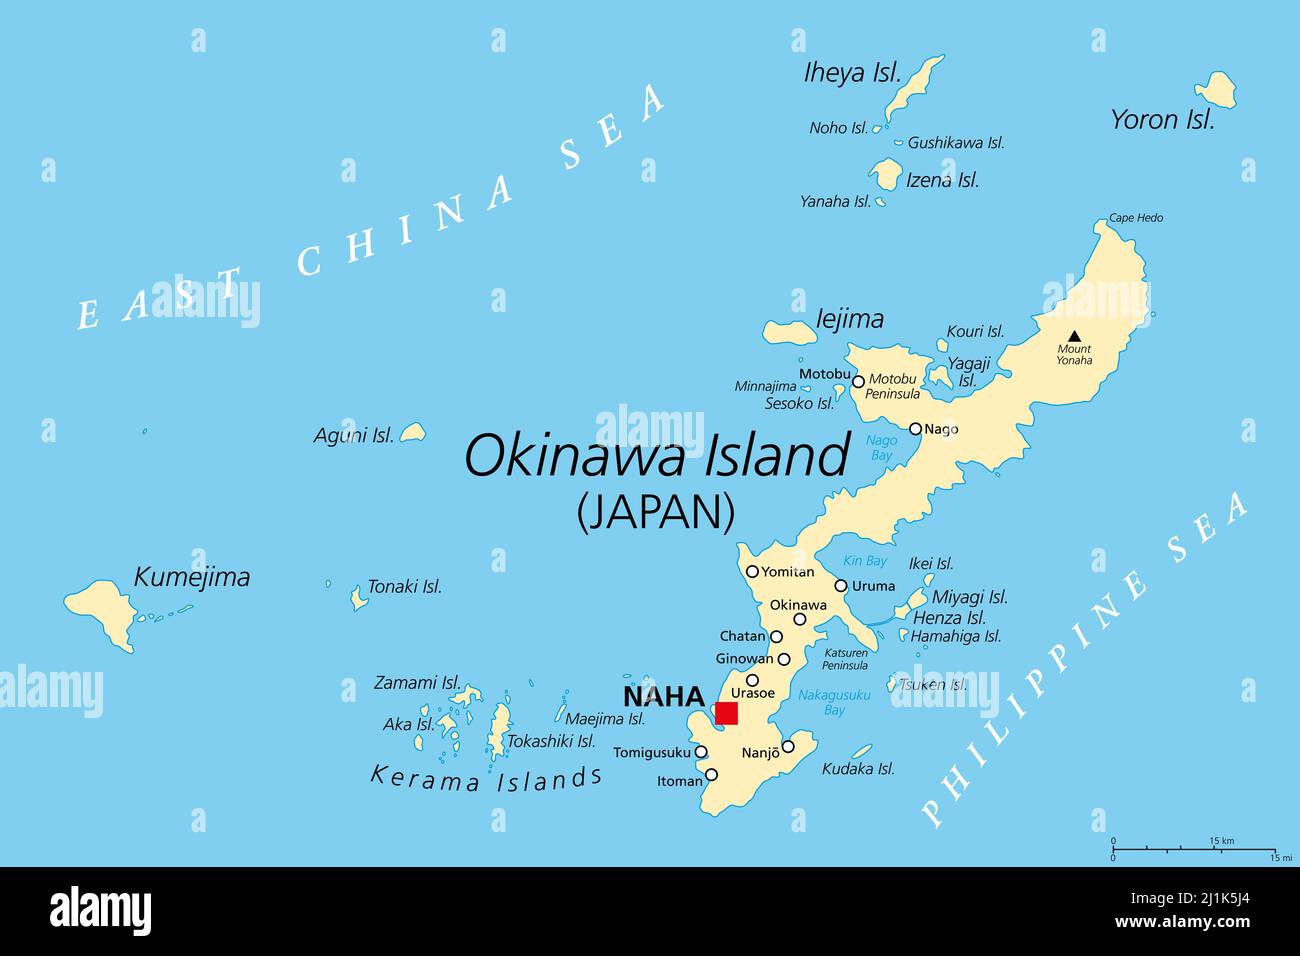 Isole Okinawa, mappa politica. Gruppo di isole nella Prefettura di Okinawa del Giappone, nel Mare della Cina Orientale, con la capitale Naha. Parte delle isole Ryukyi. Foto Stock